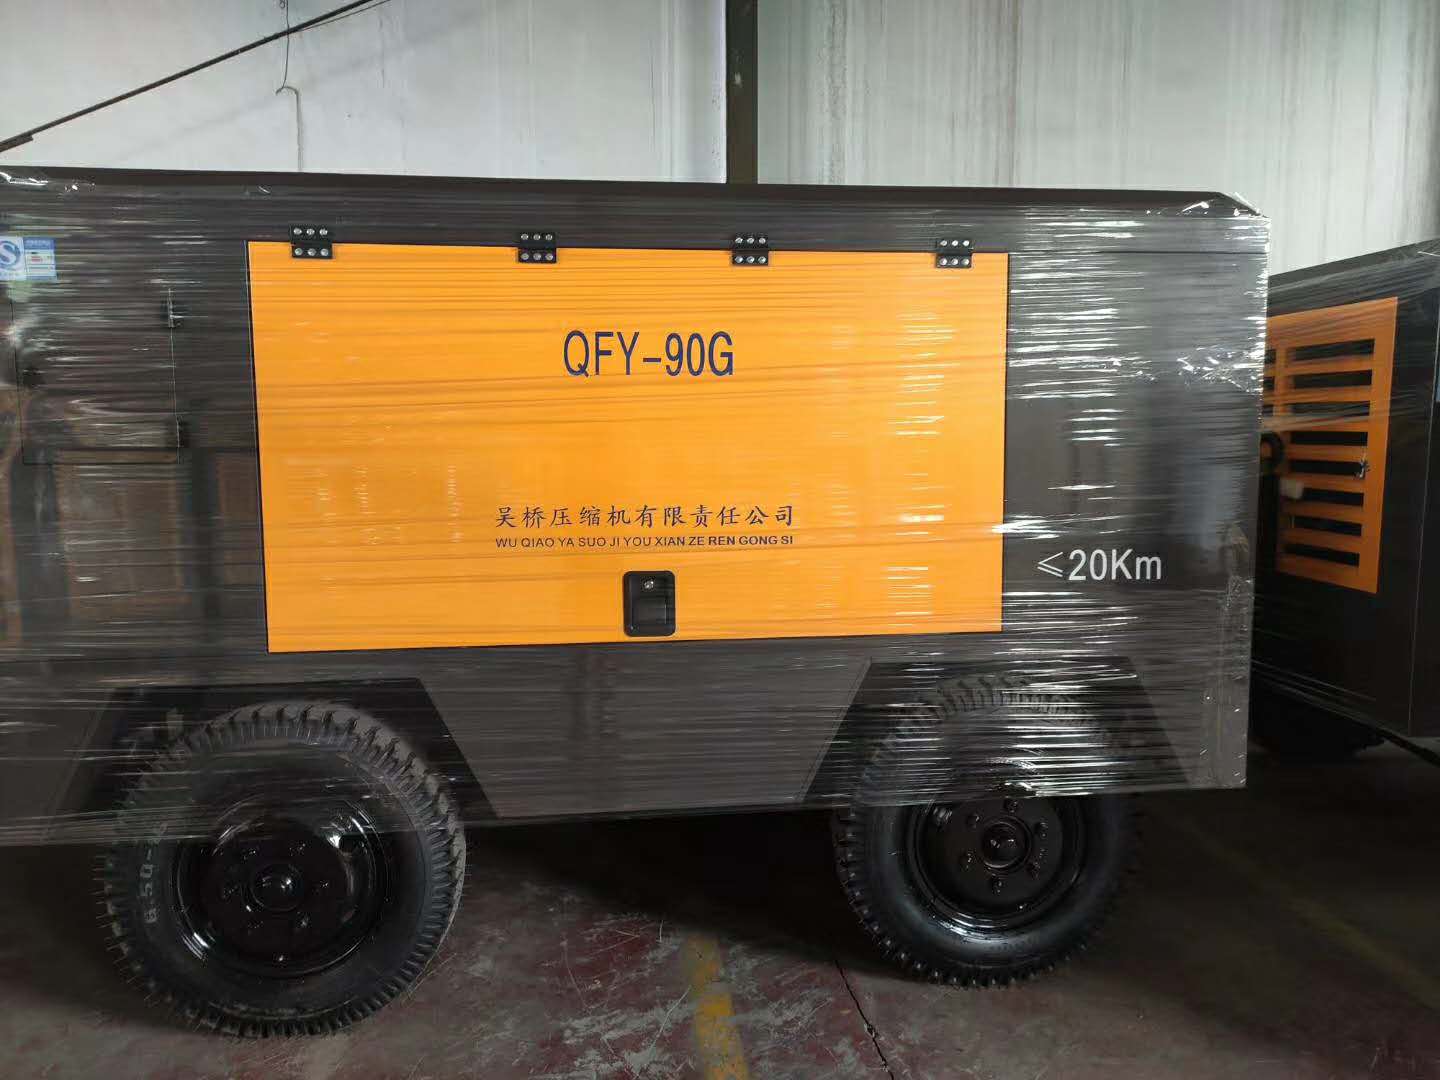 河北吴桥压缩机有限责任公司QFY-90G移动工程螺杆空压机